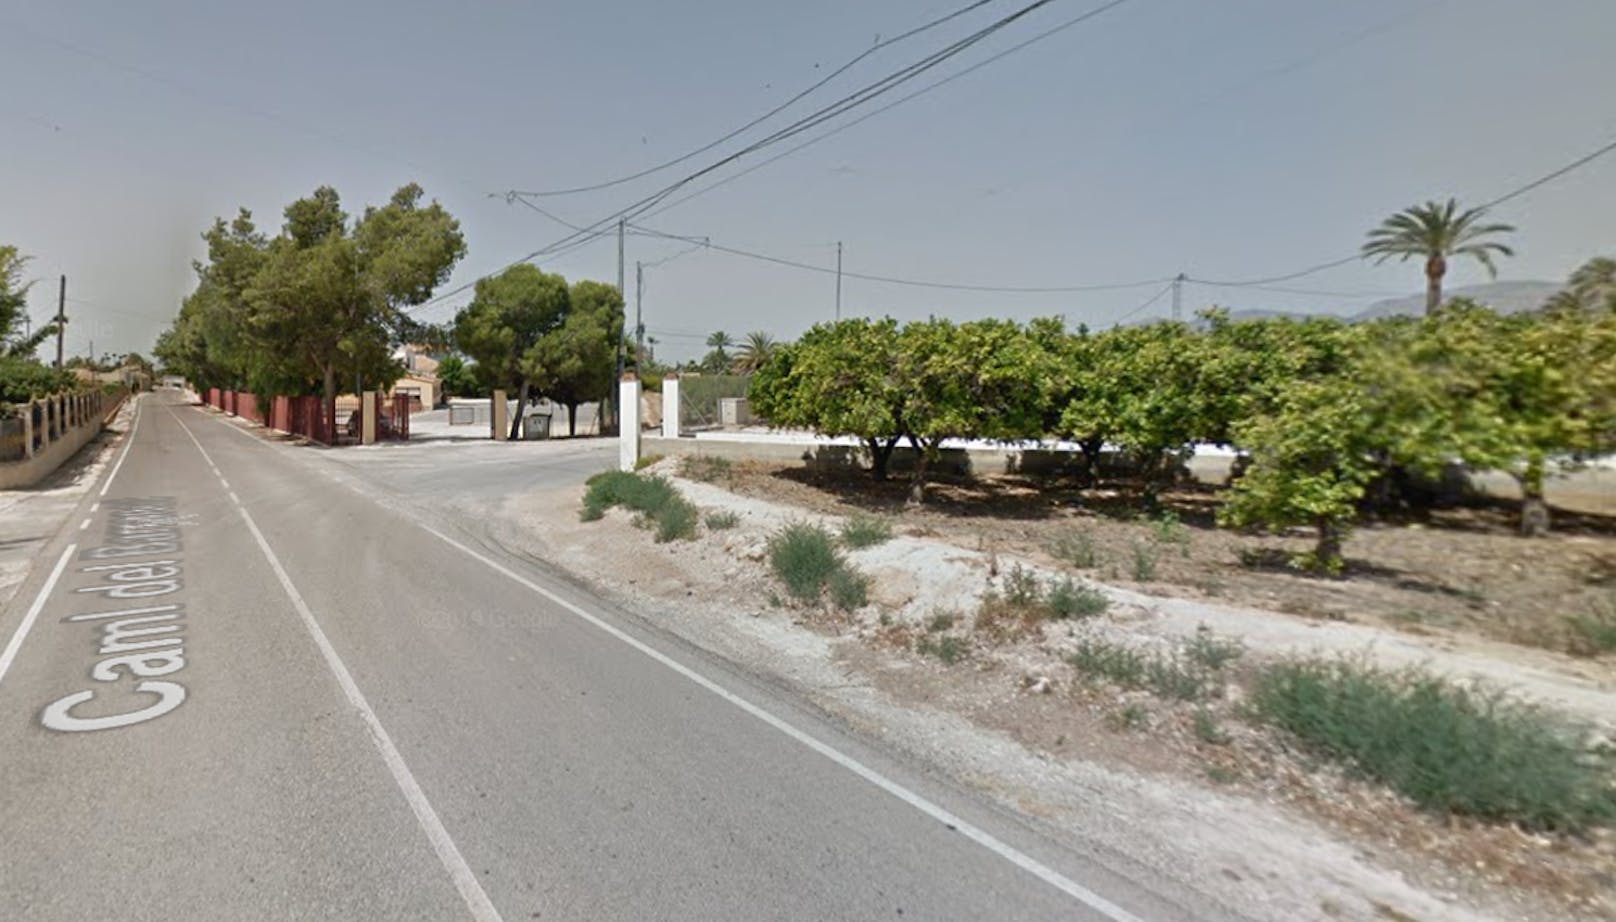 In der Ortschaft Algoda bei Elche in Spanien hat ein 15-Jähriger nach einem Streit wegen schlechter Schulnoten seine Eltern und seinen kleinen Bruder umgebracht.